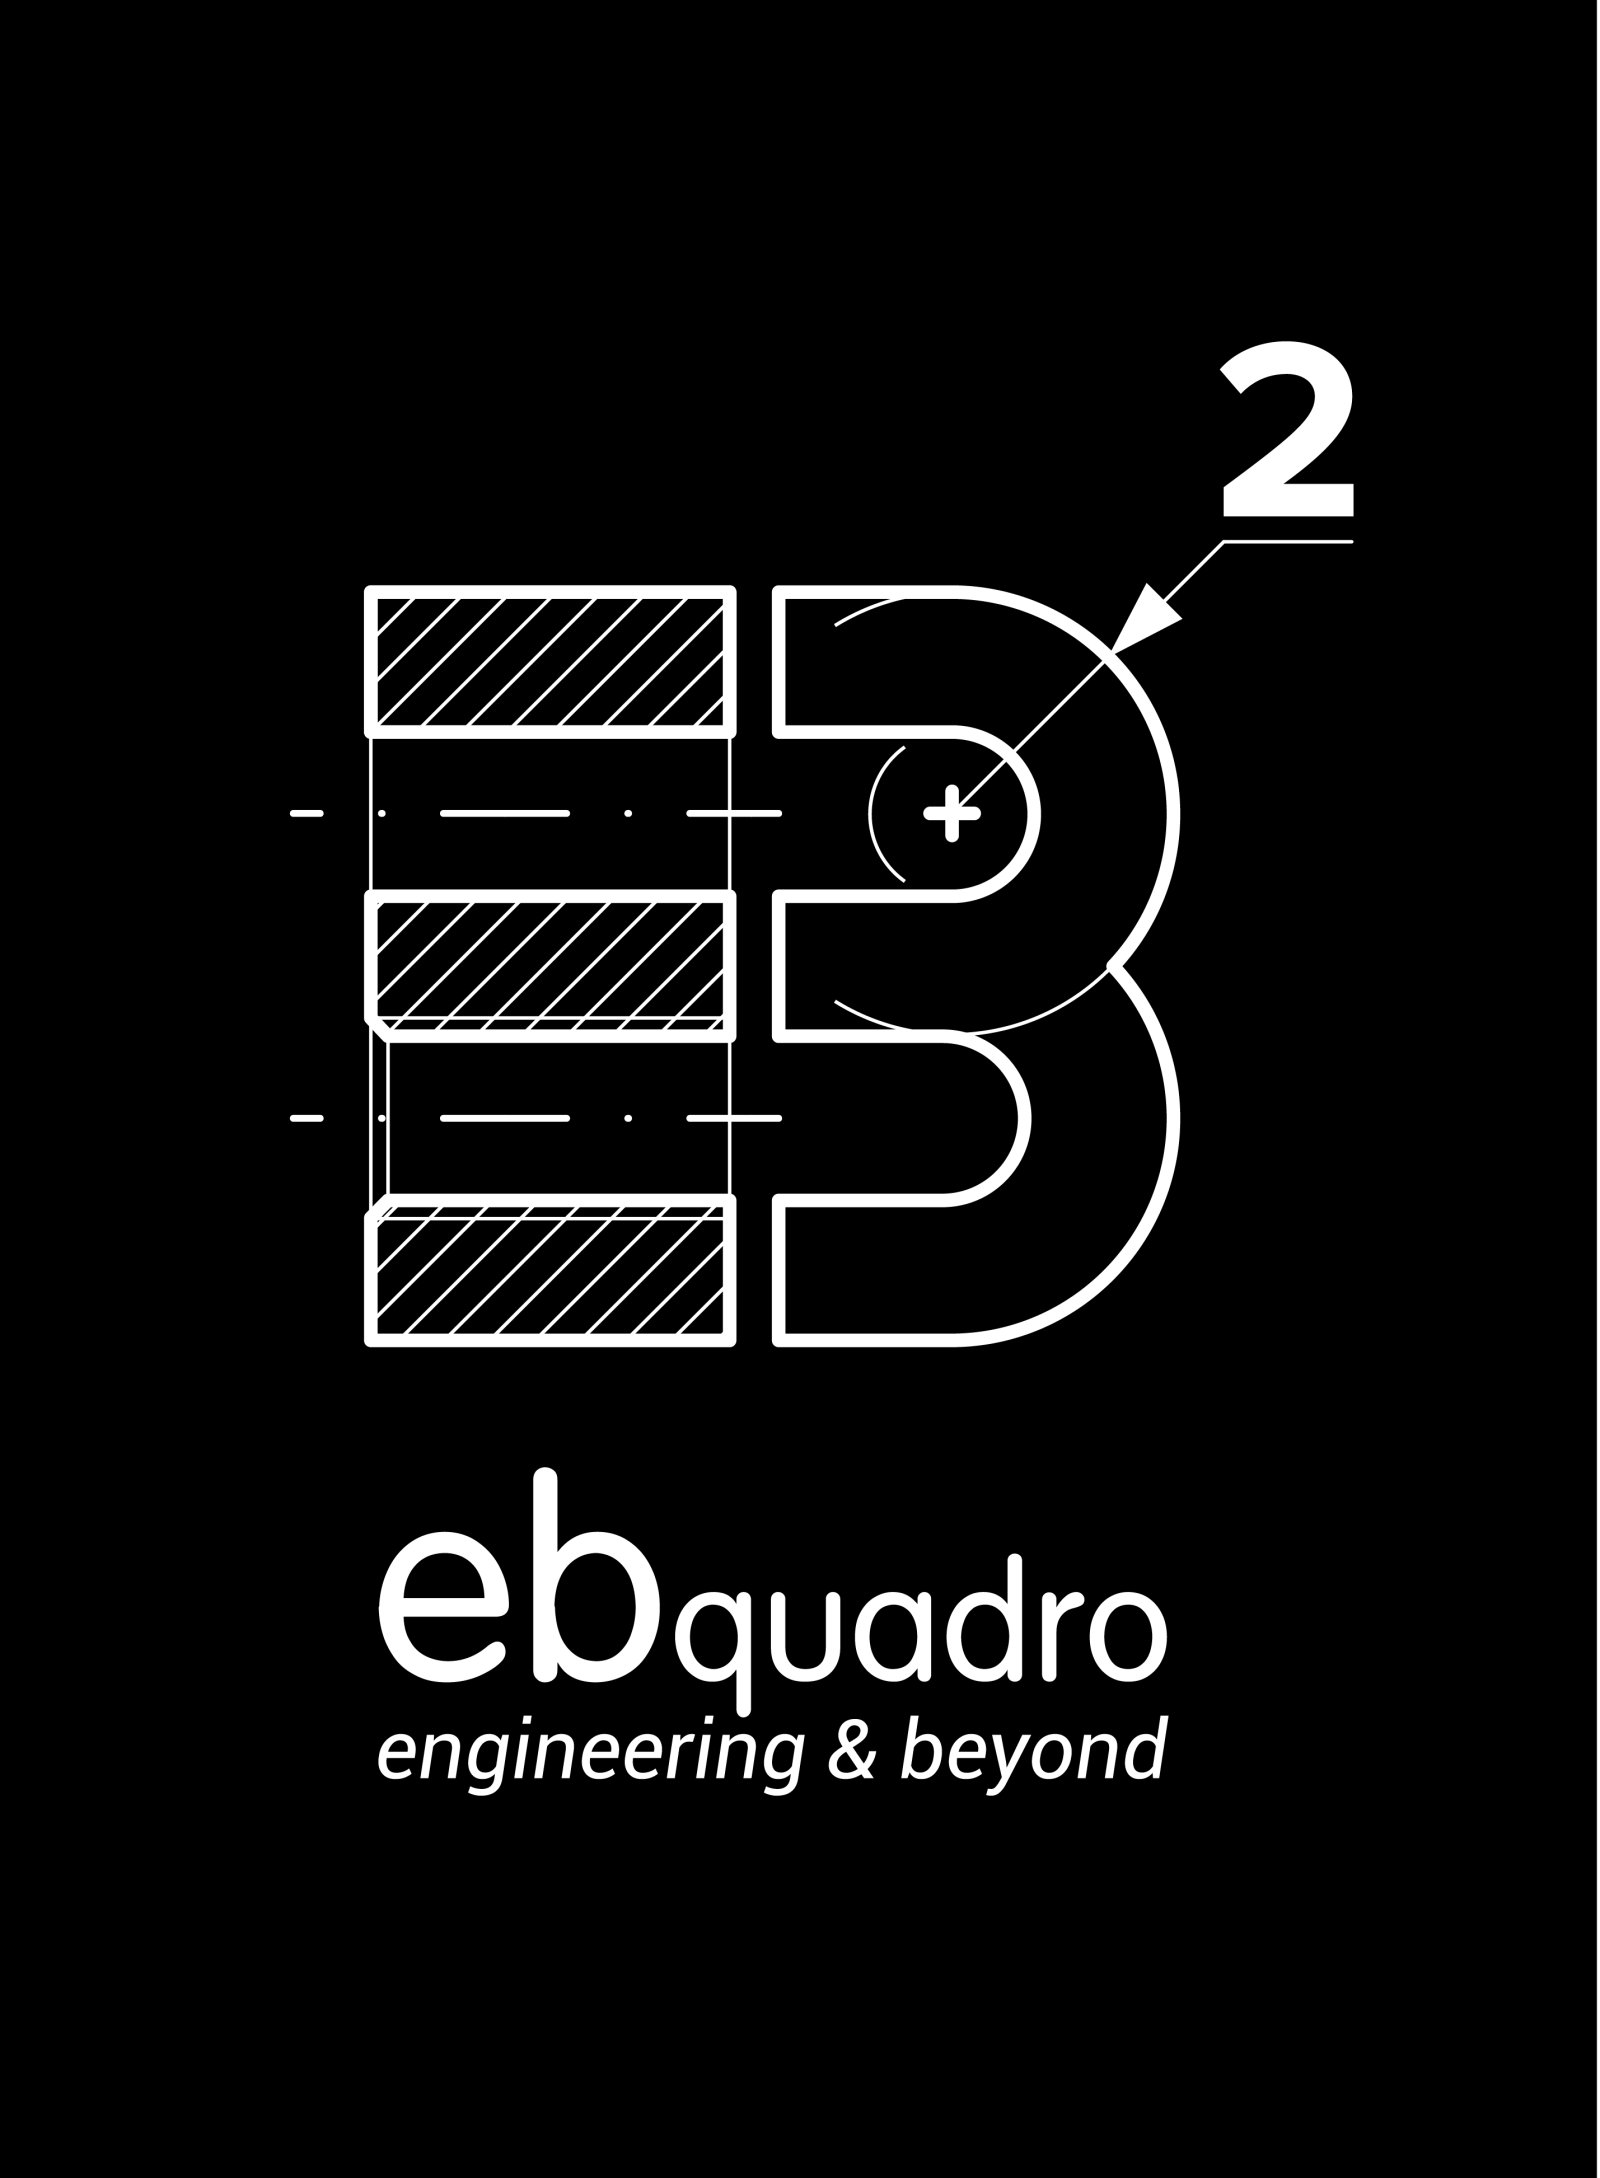 Logo ebquadro - engineering & beyond